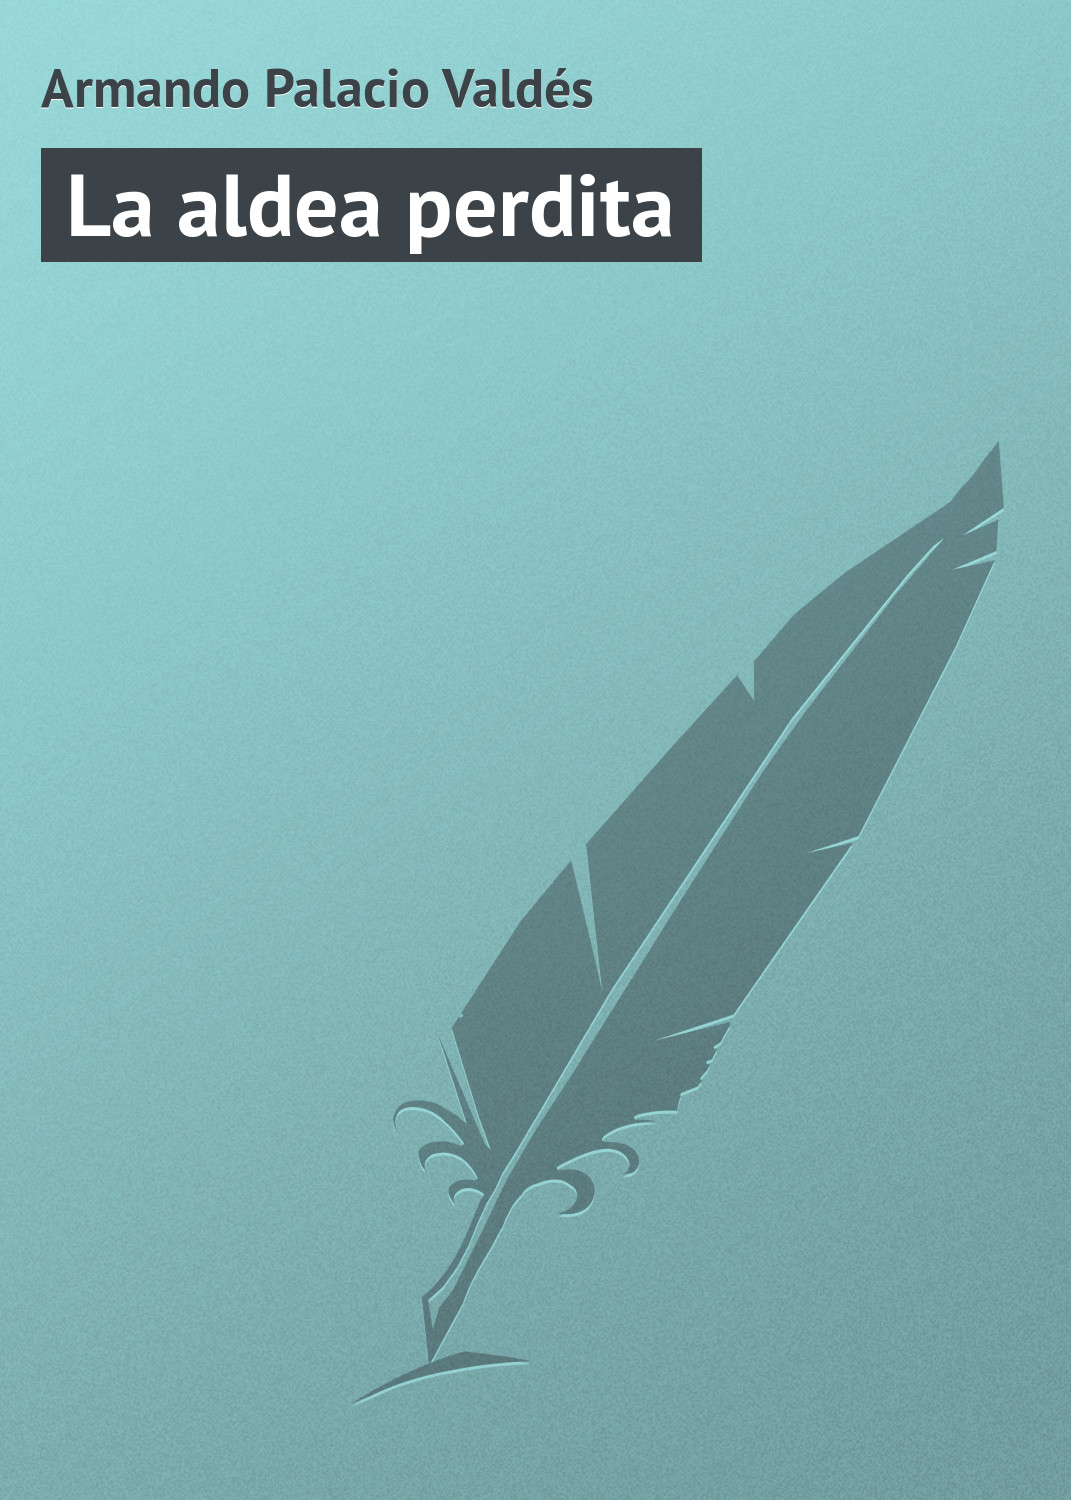 Книга La aldea perdita из серии , созданная Armando Palacio, может относится к жанру Зарубежная старинная литература, Зарубежная классика. Стоимость электронной книги La aldea perdita с идентификатором 21107774 составляет 5.99 руб.